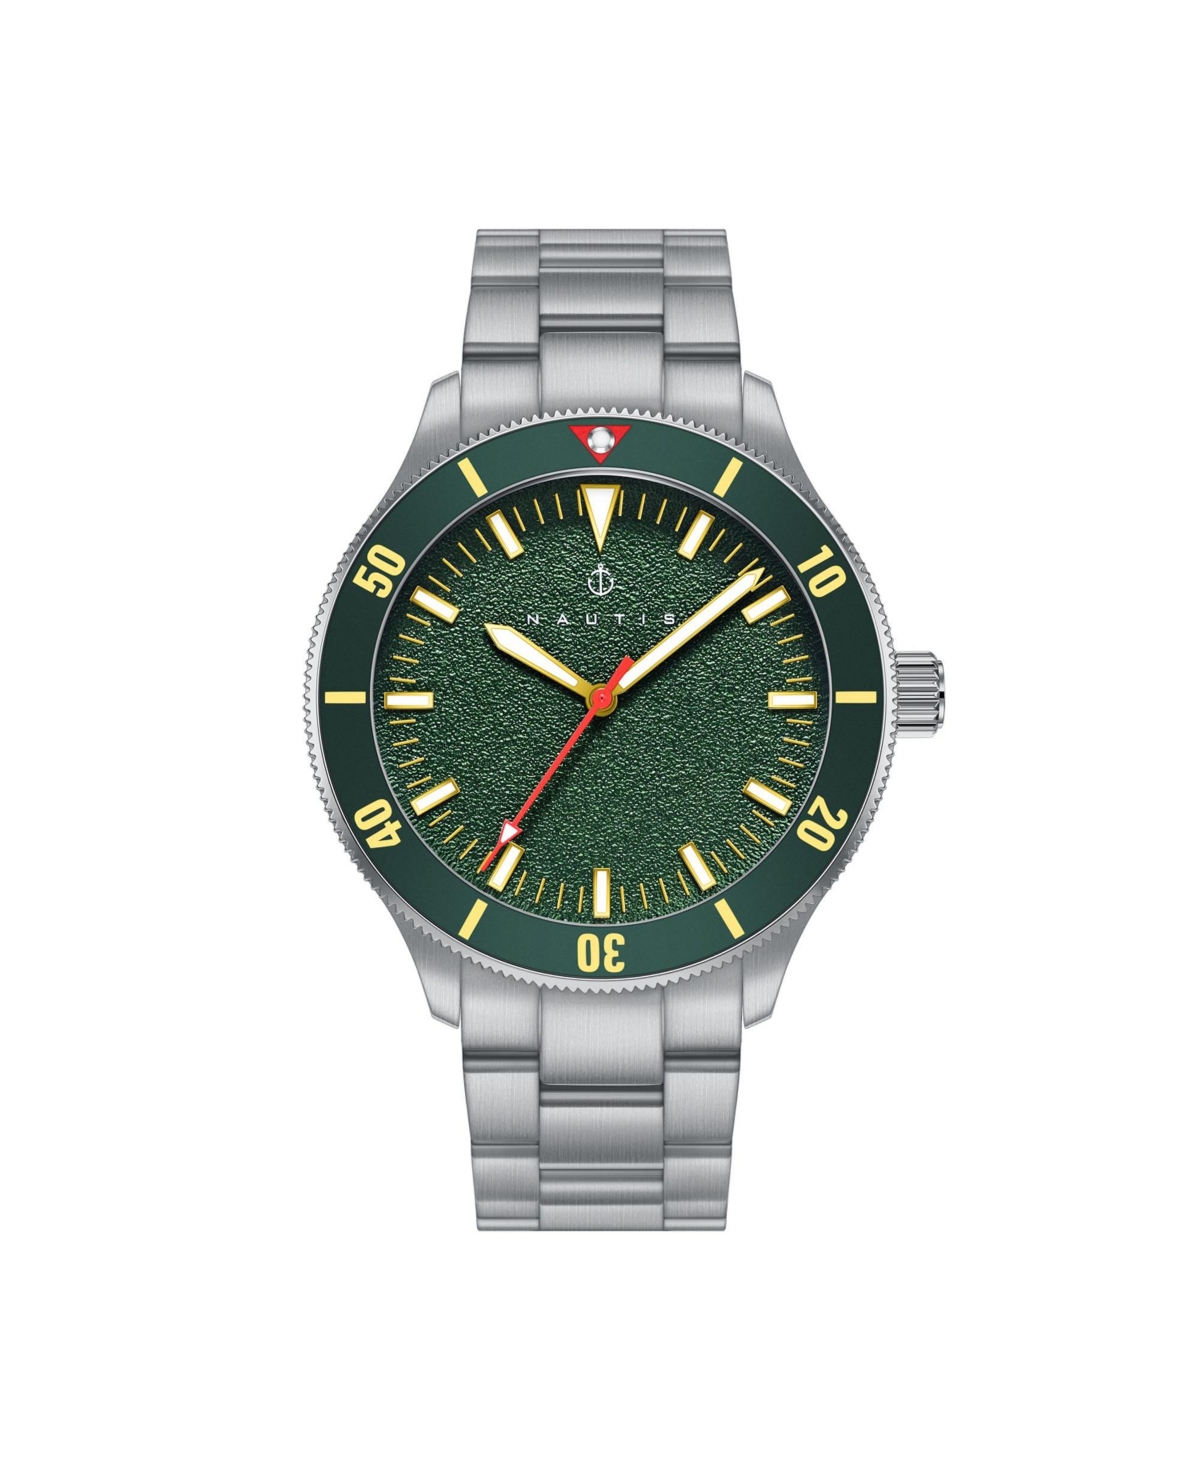 Men Deacon Stainless Steel Watch - Silver/Green, 43mm - Silver/green